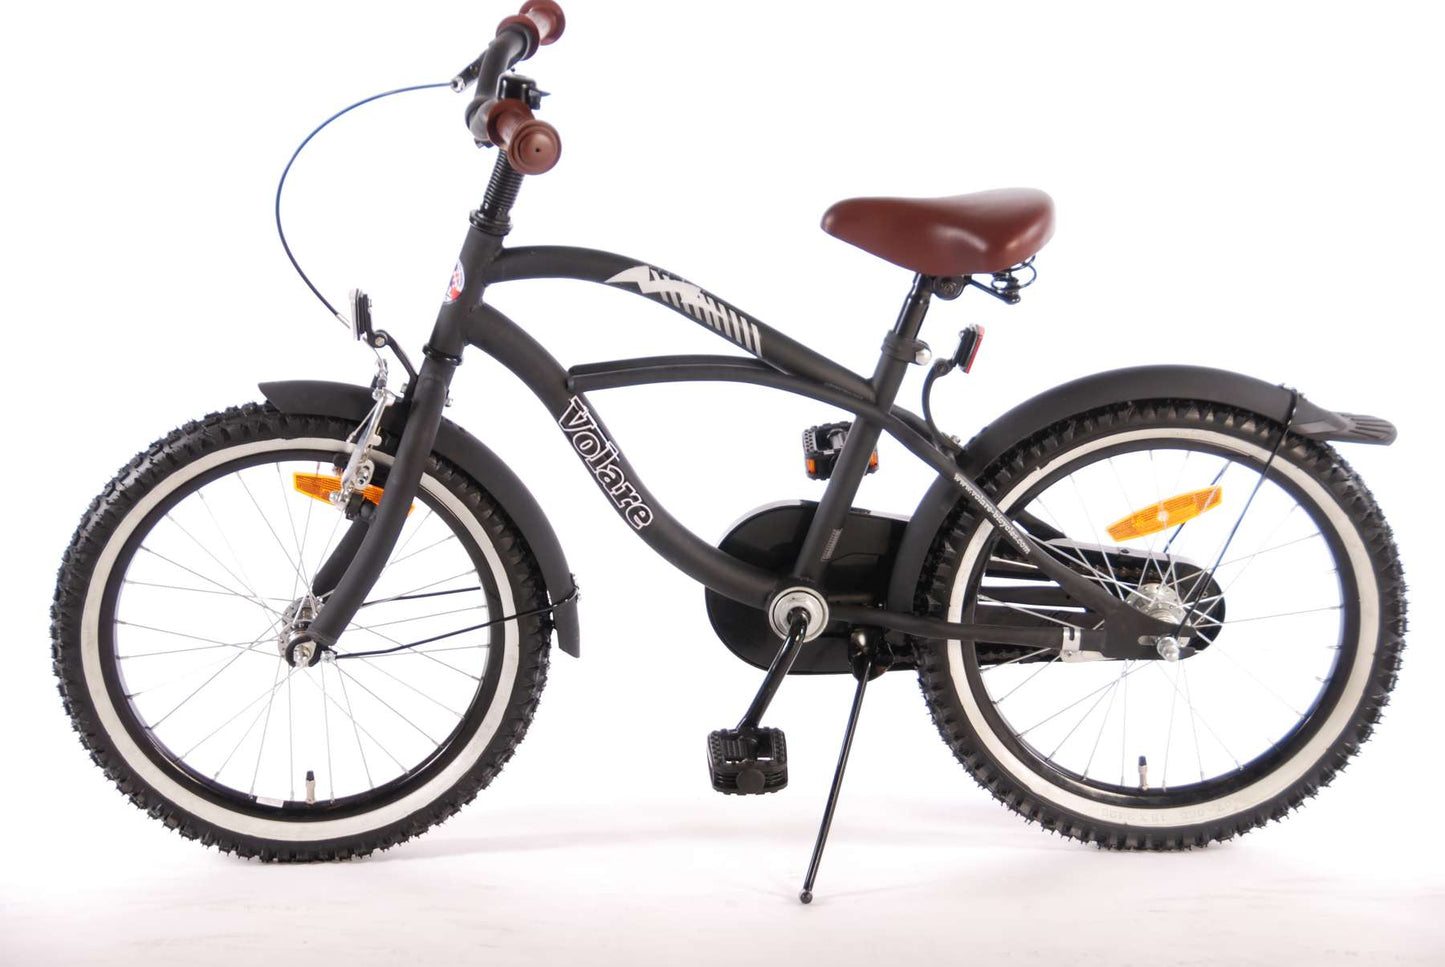 Bike per bambini Vlatar Black Cruiser - Boys - 18 pollici - Nero - 95% assemblato